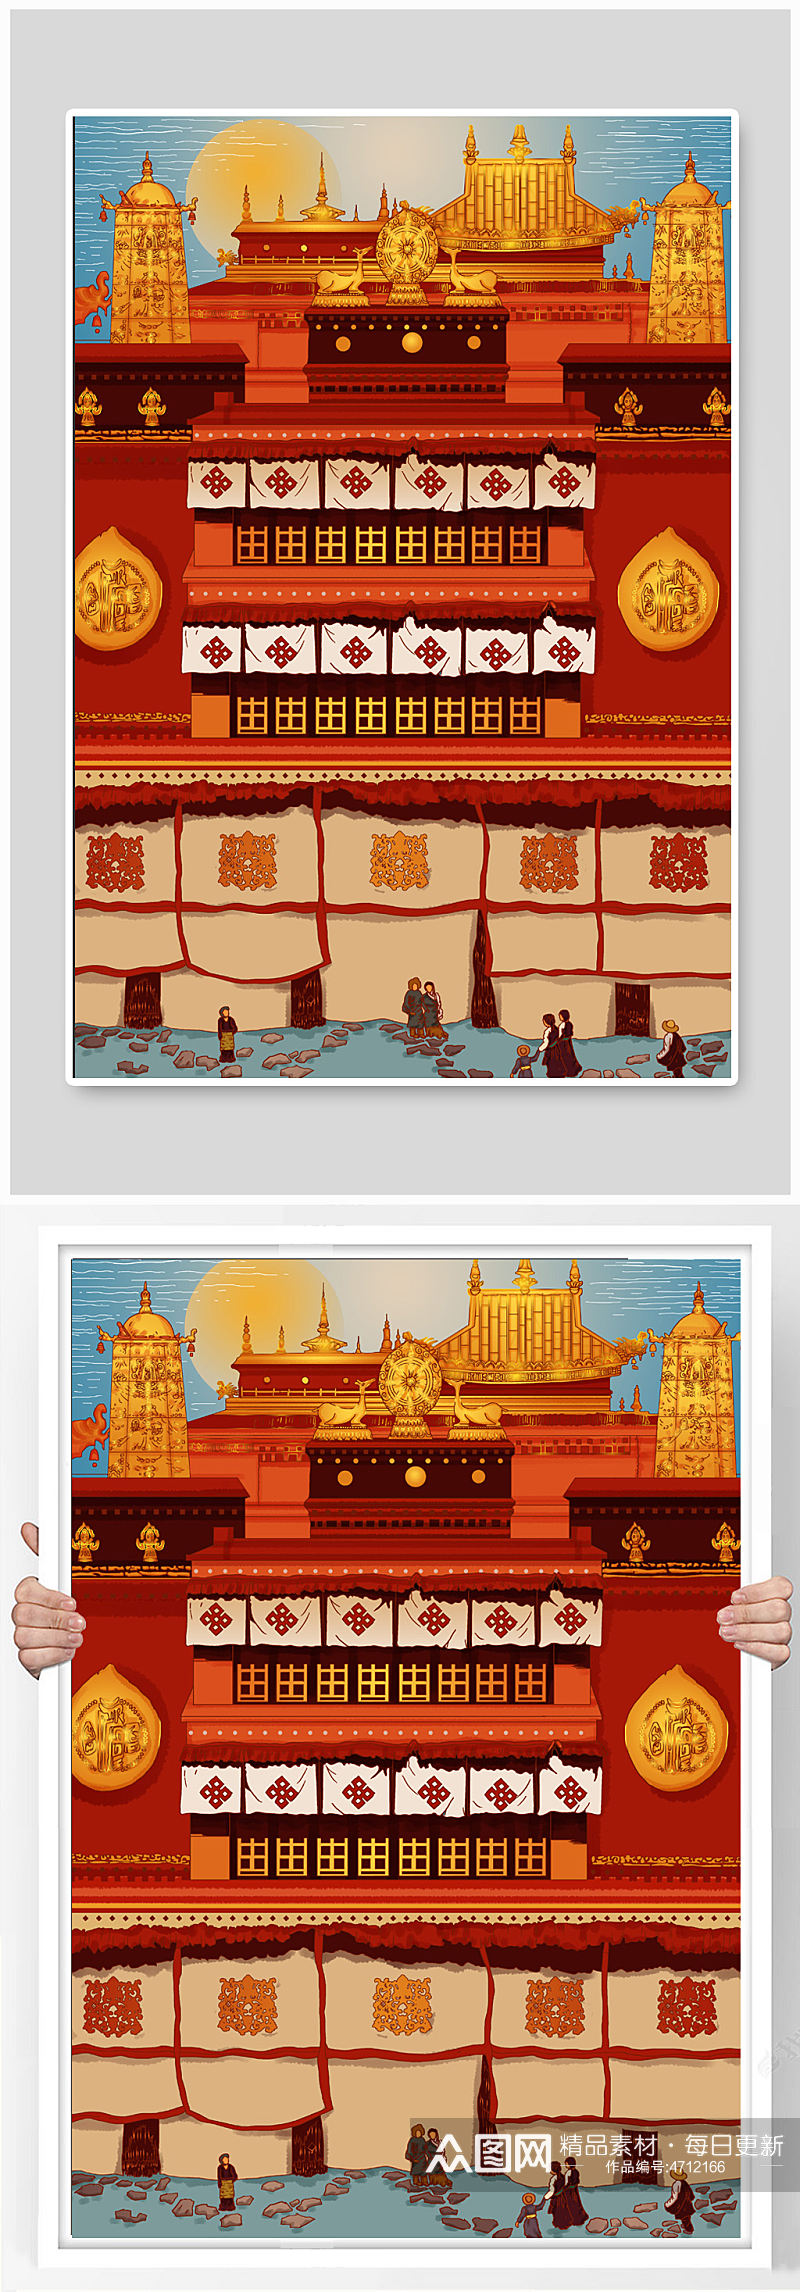 大昭寺藏传佛庙旅游景点西藏城市建筑插画素材